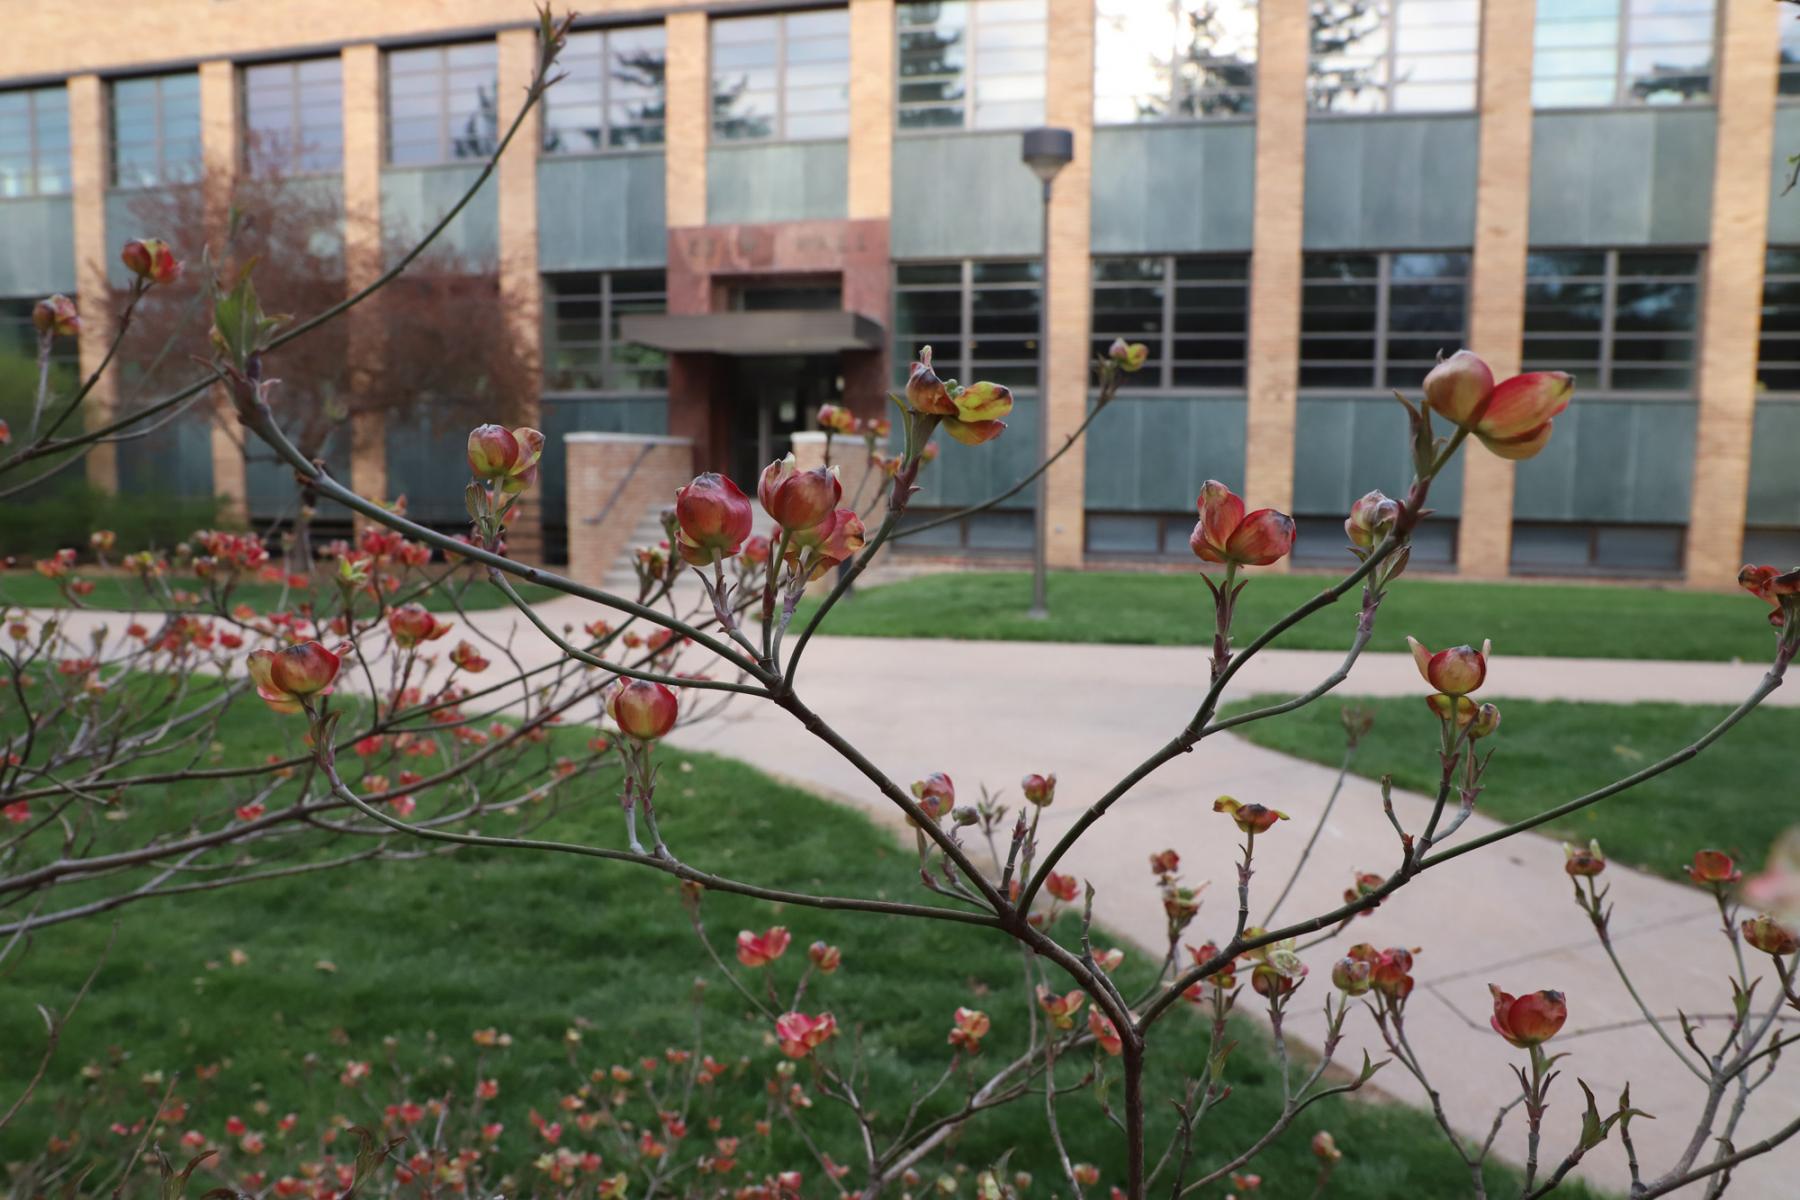 Cornus florida or ‘Cherokee Chief’, a flowering dogwood is blooming by Keim Hall, East Campus.